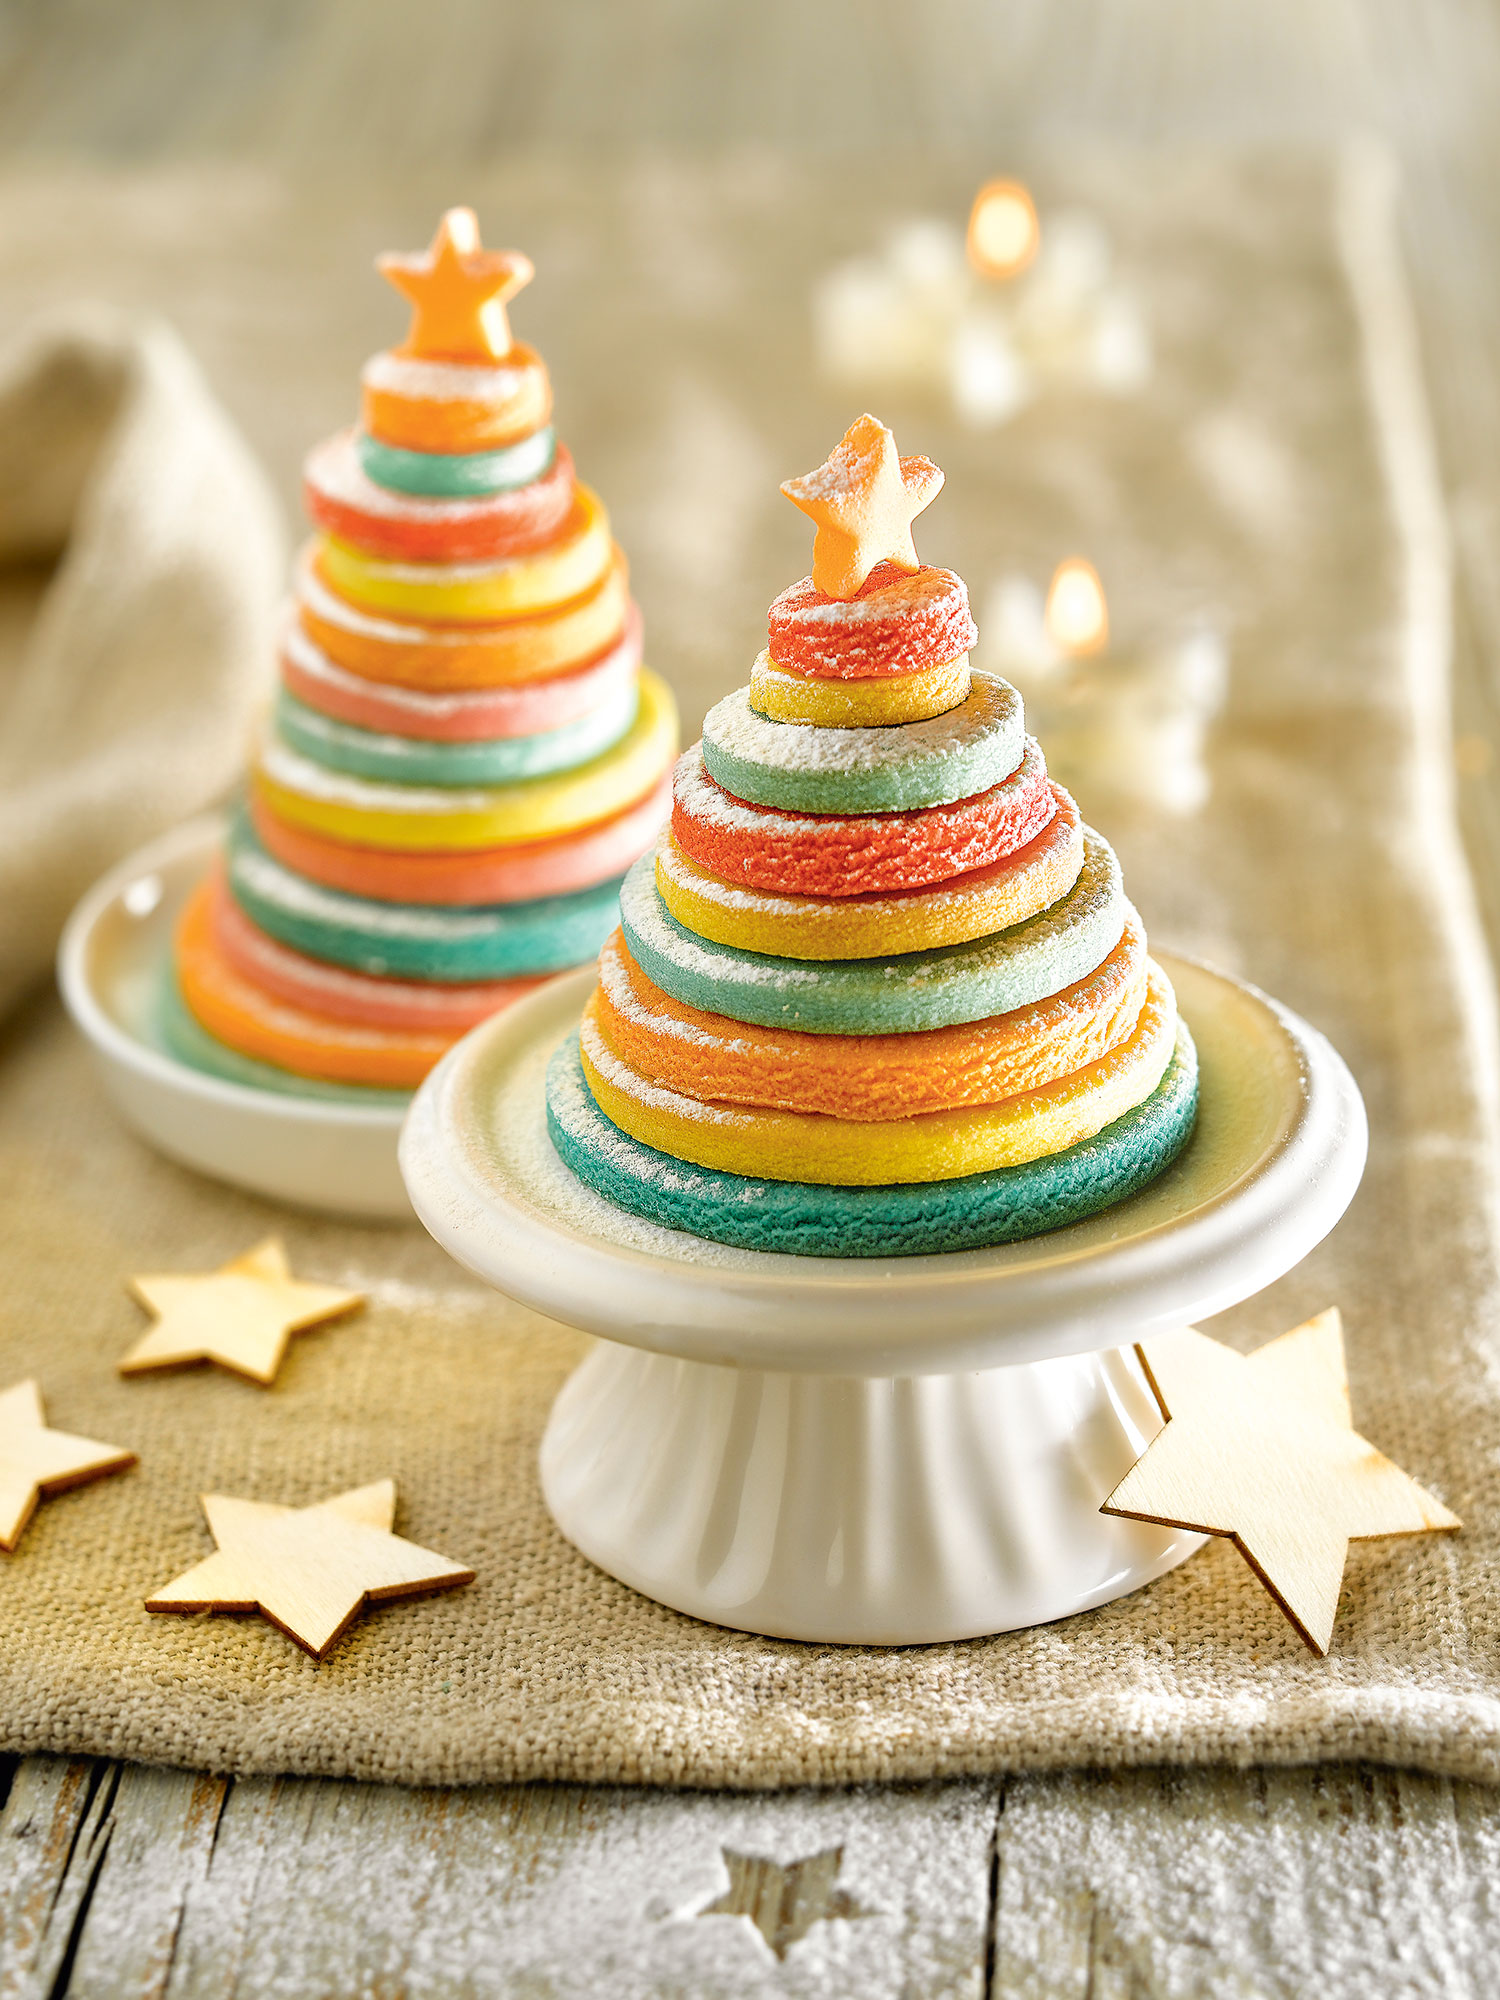 Detalle de galletas de colores en forma de árbol de Navidad